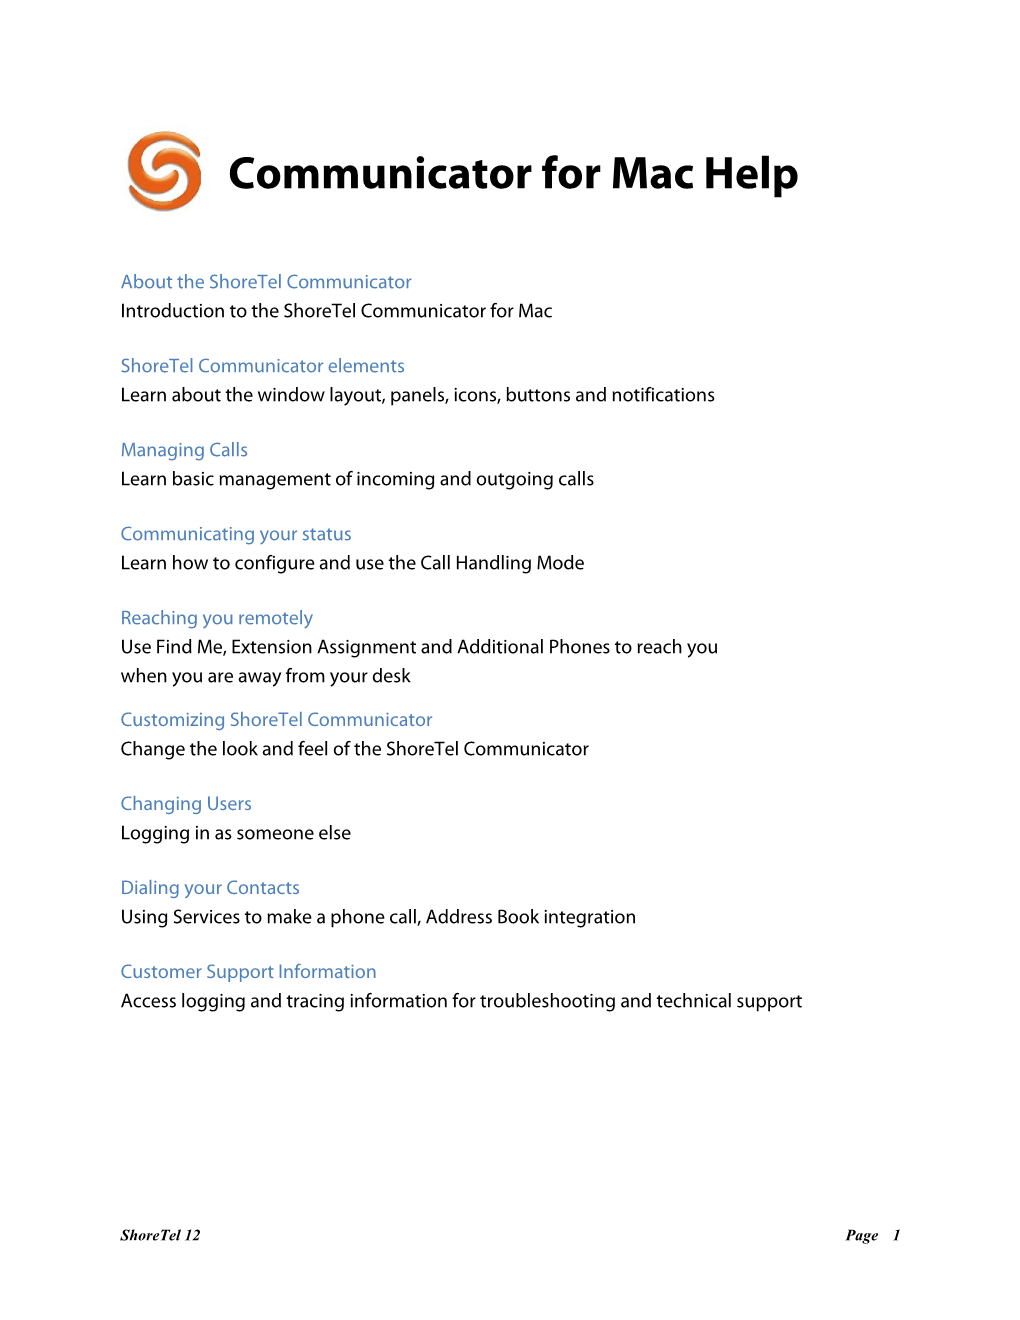 Shoretel 12 Communicator for Mac User Guide